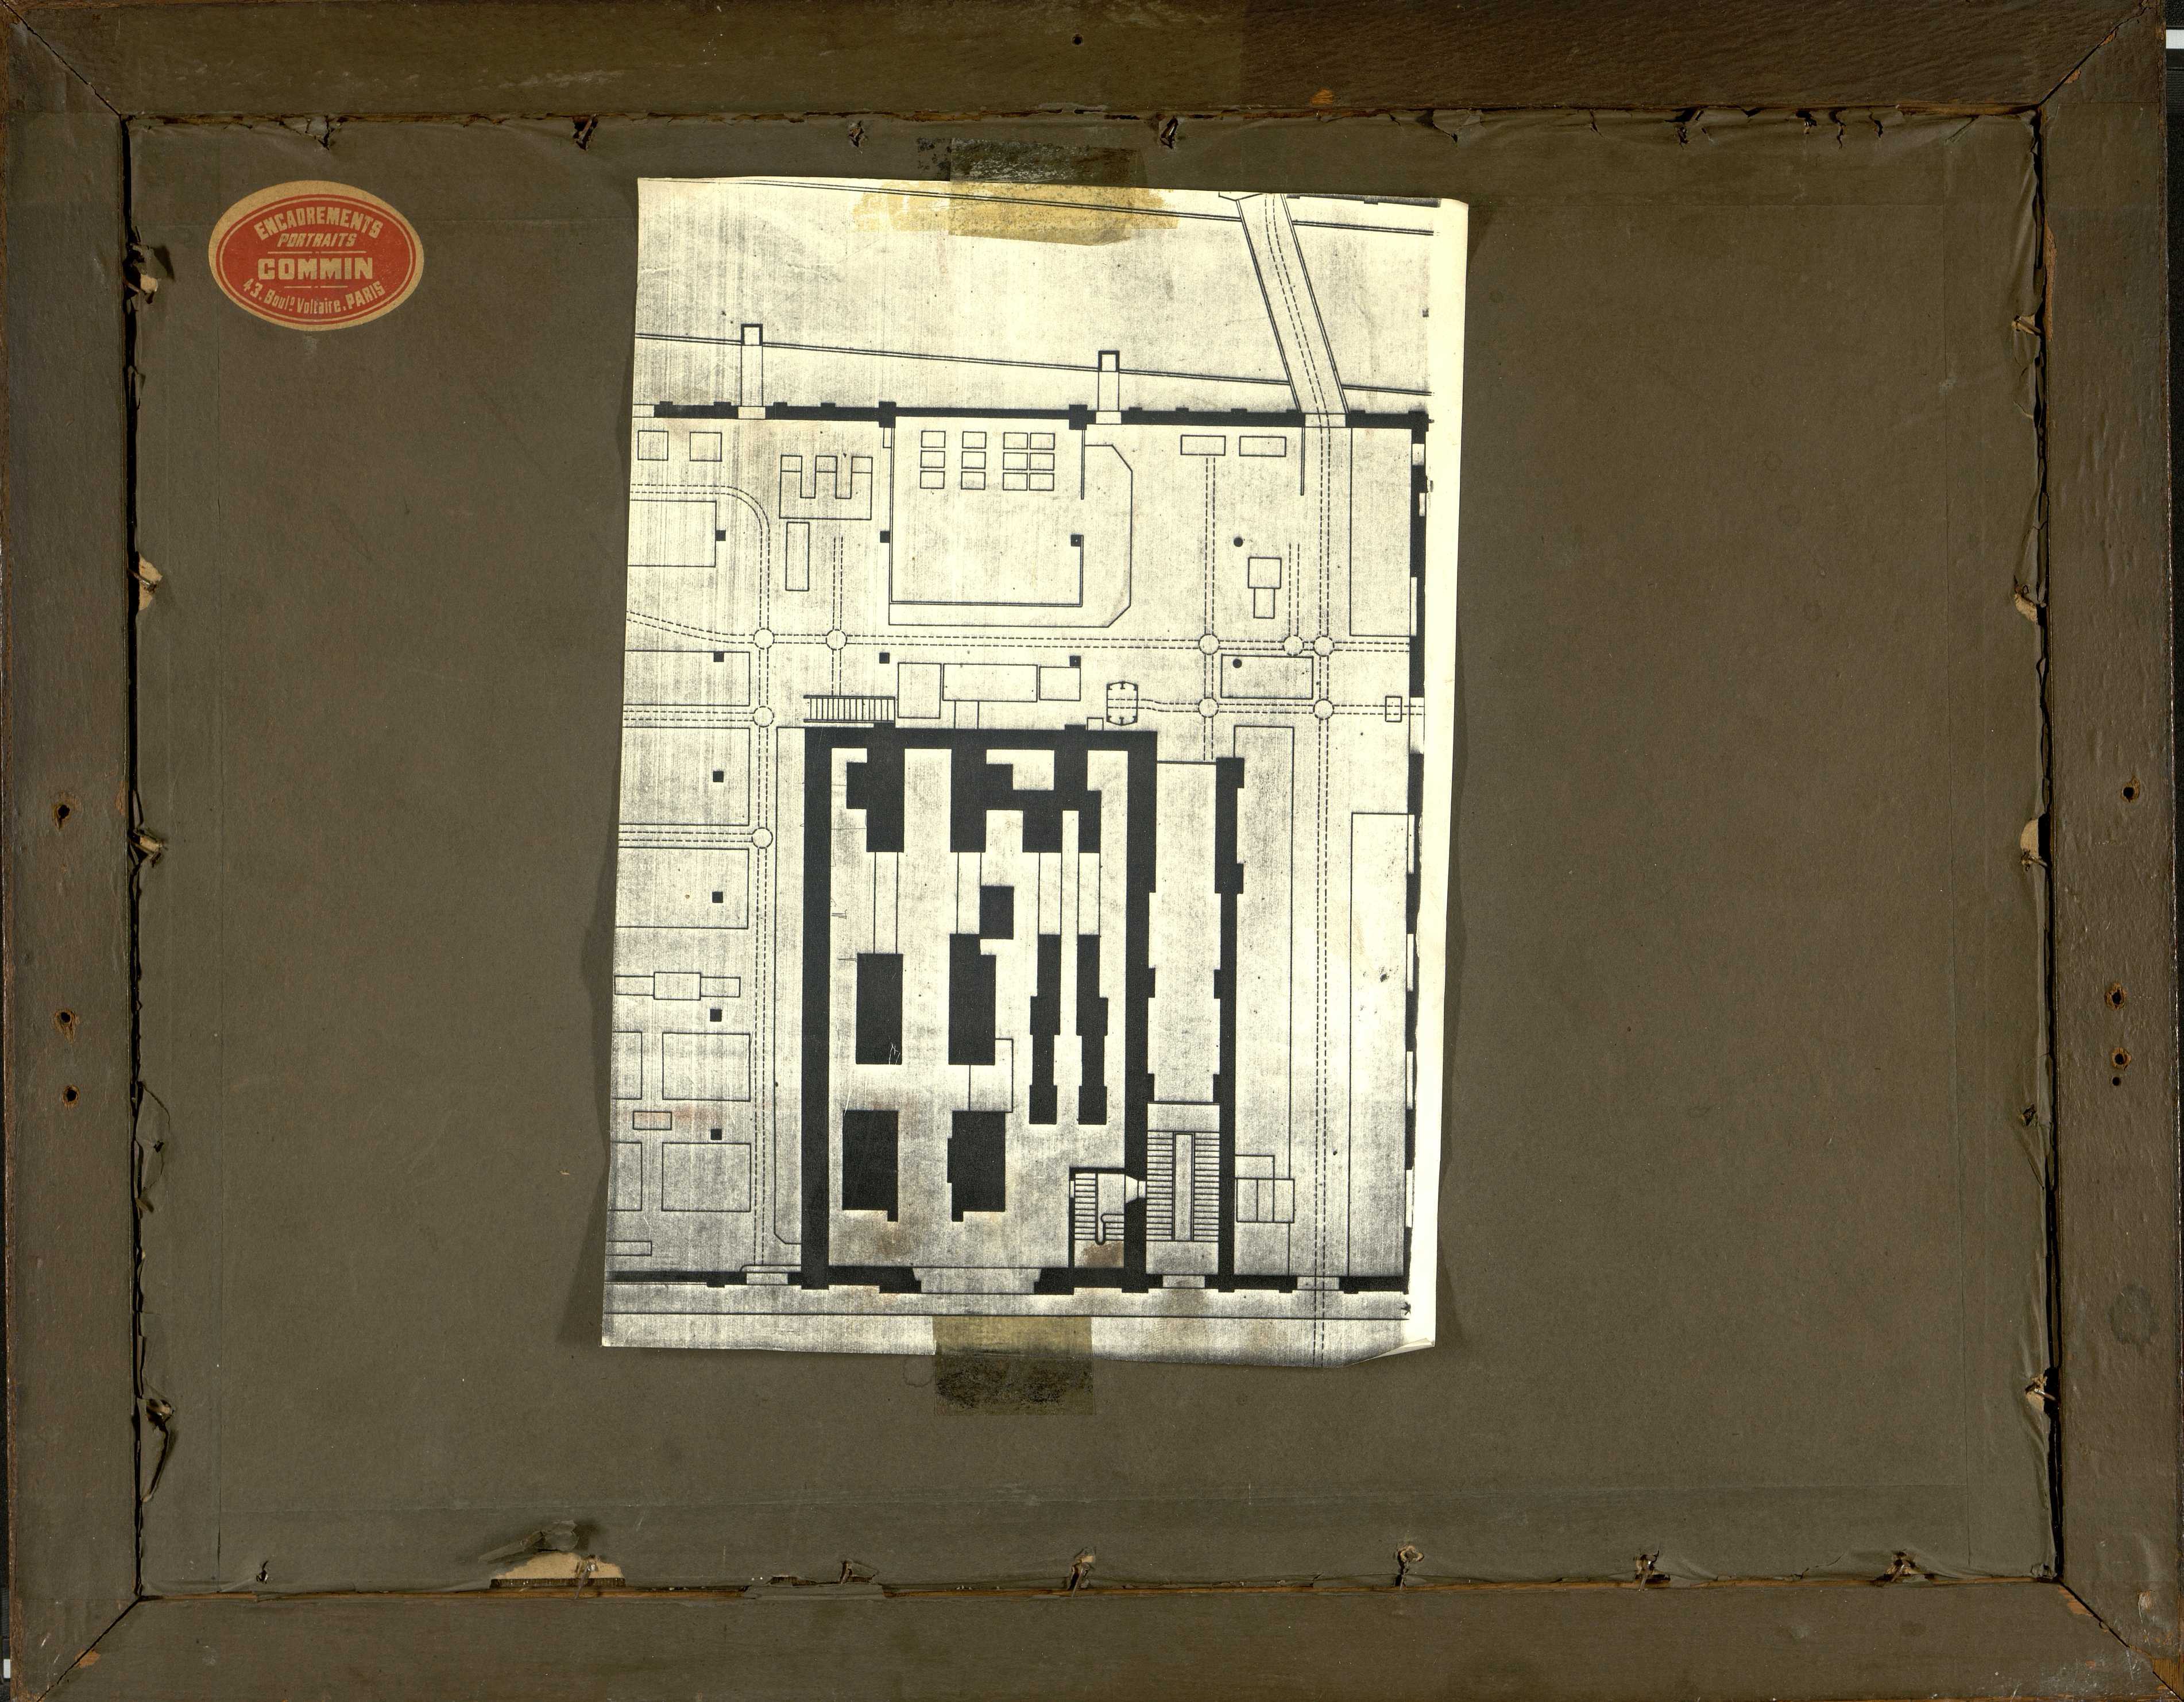 Usine Cosserat rue Maberly à Amiens. Photographie encadrée de la salle des machines à vapeur vers 1900. Au verso, copie du plan d'implantation de la salle des machines